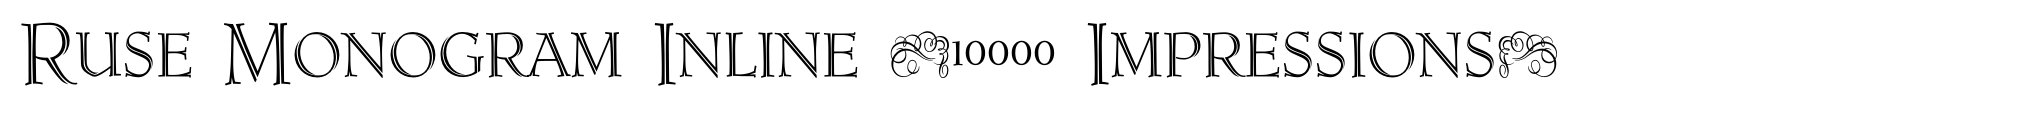 Ruse Monogram Inline (10000 Impressions) image